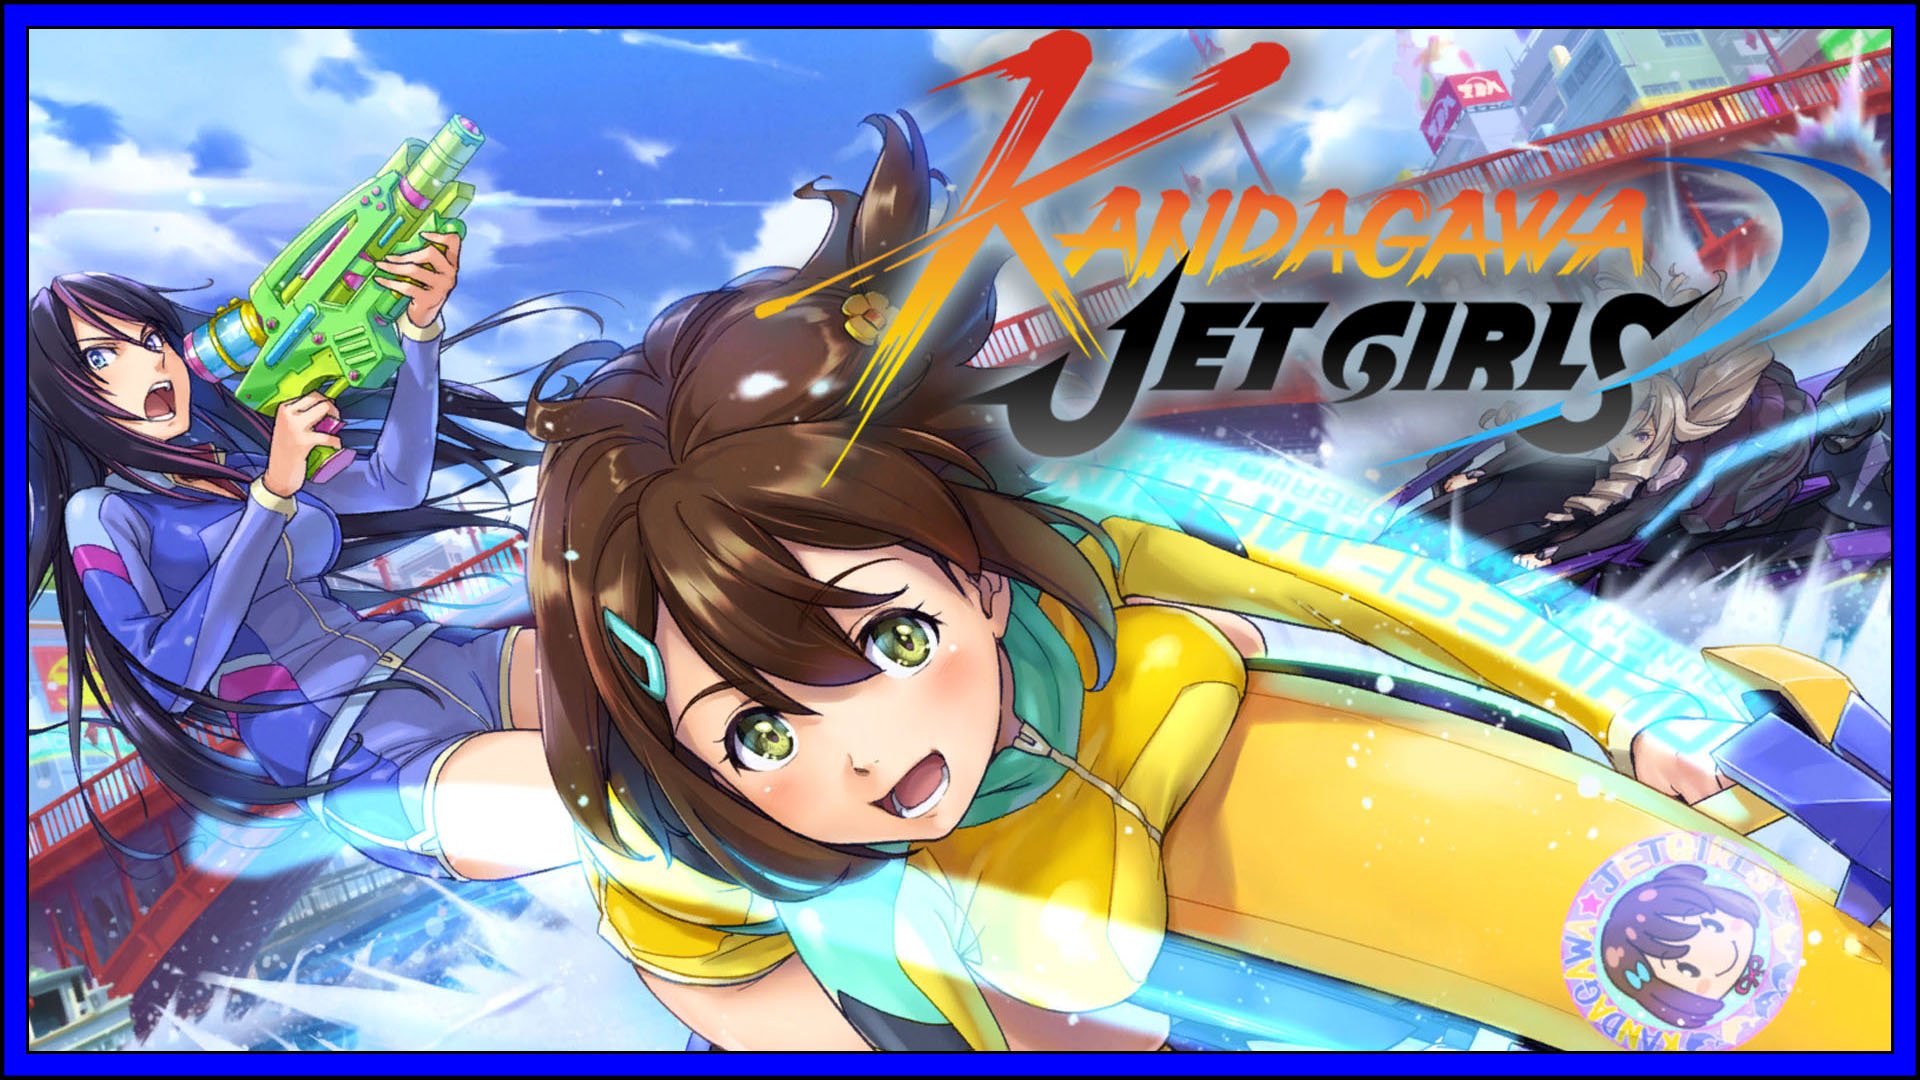 Kandagawa Jet Girls Fi3